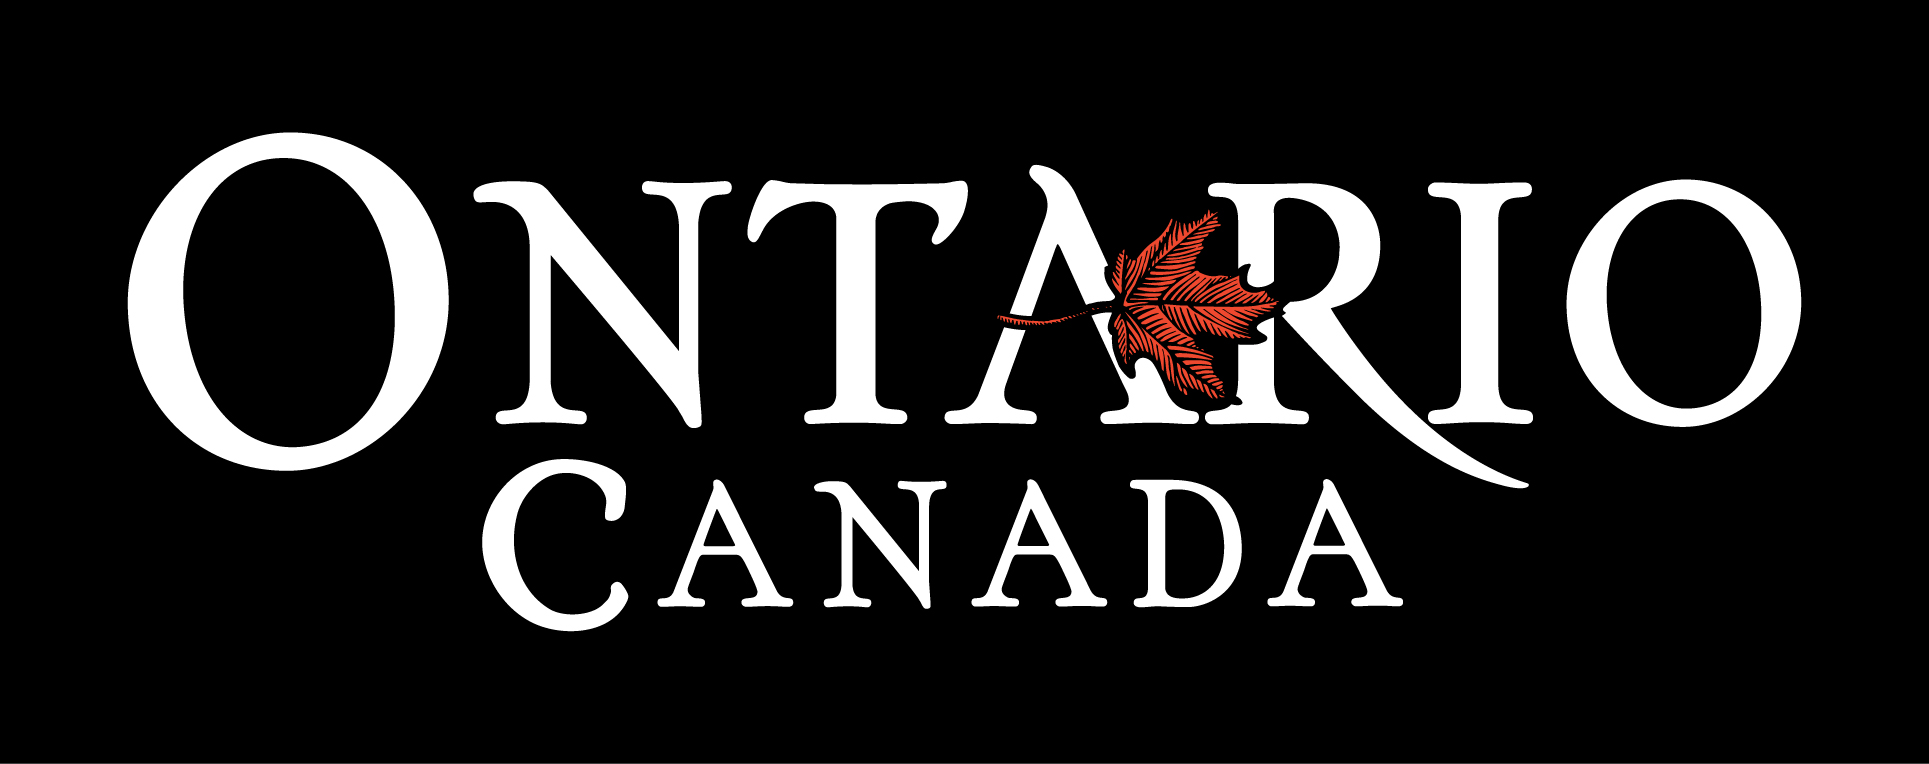 Logos de l'Ontario, Canada - Bicolore inversé